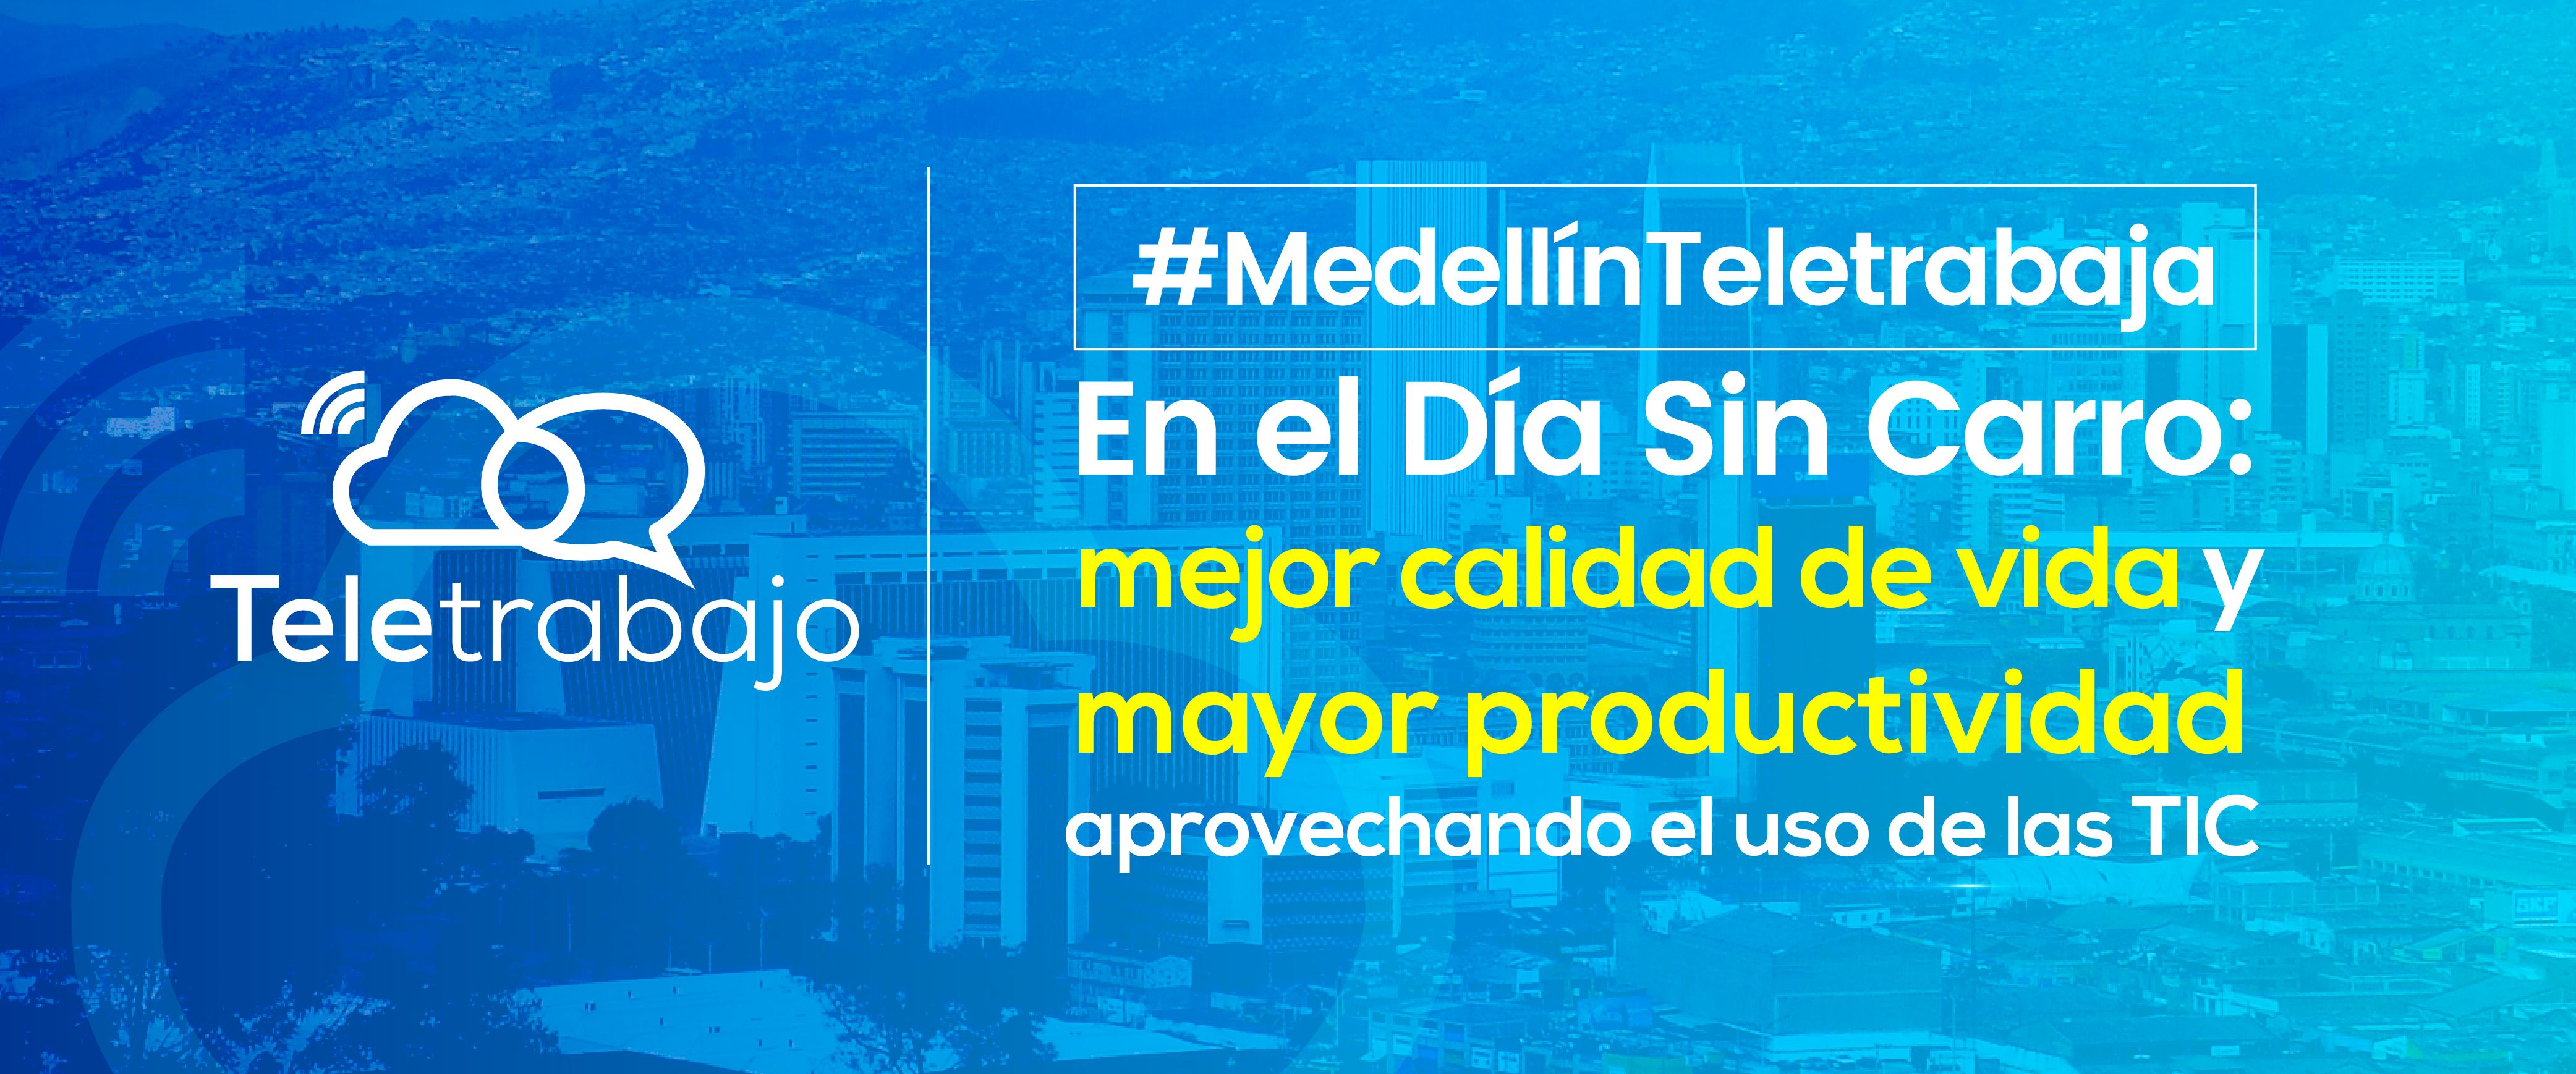 ¡Medellín a teletrabajar en el Día sin carro!